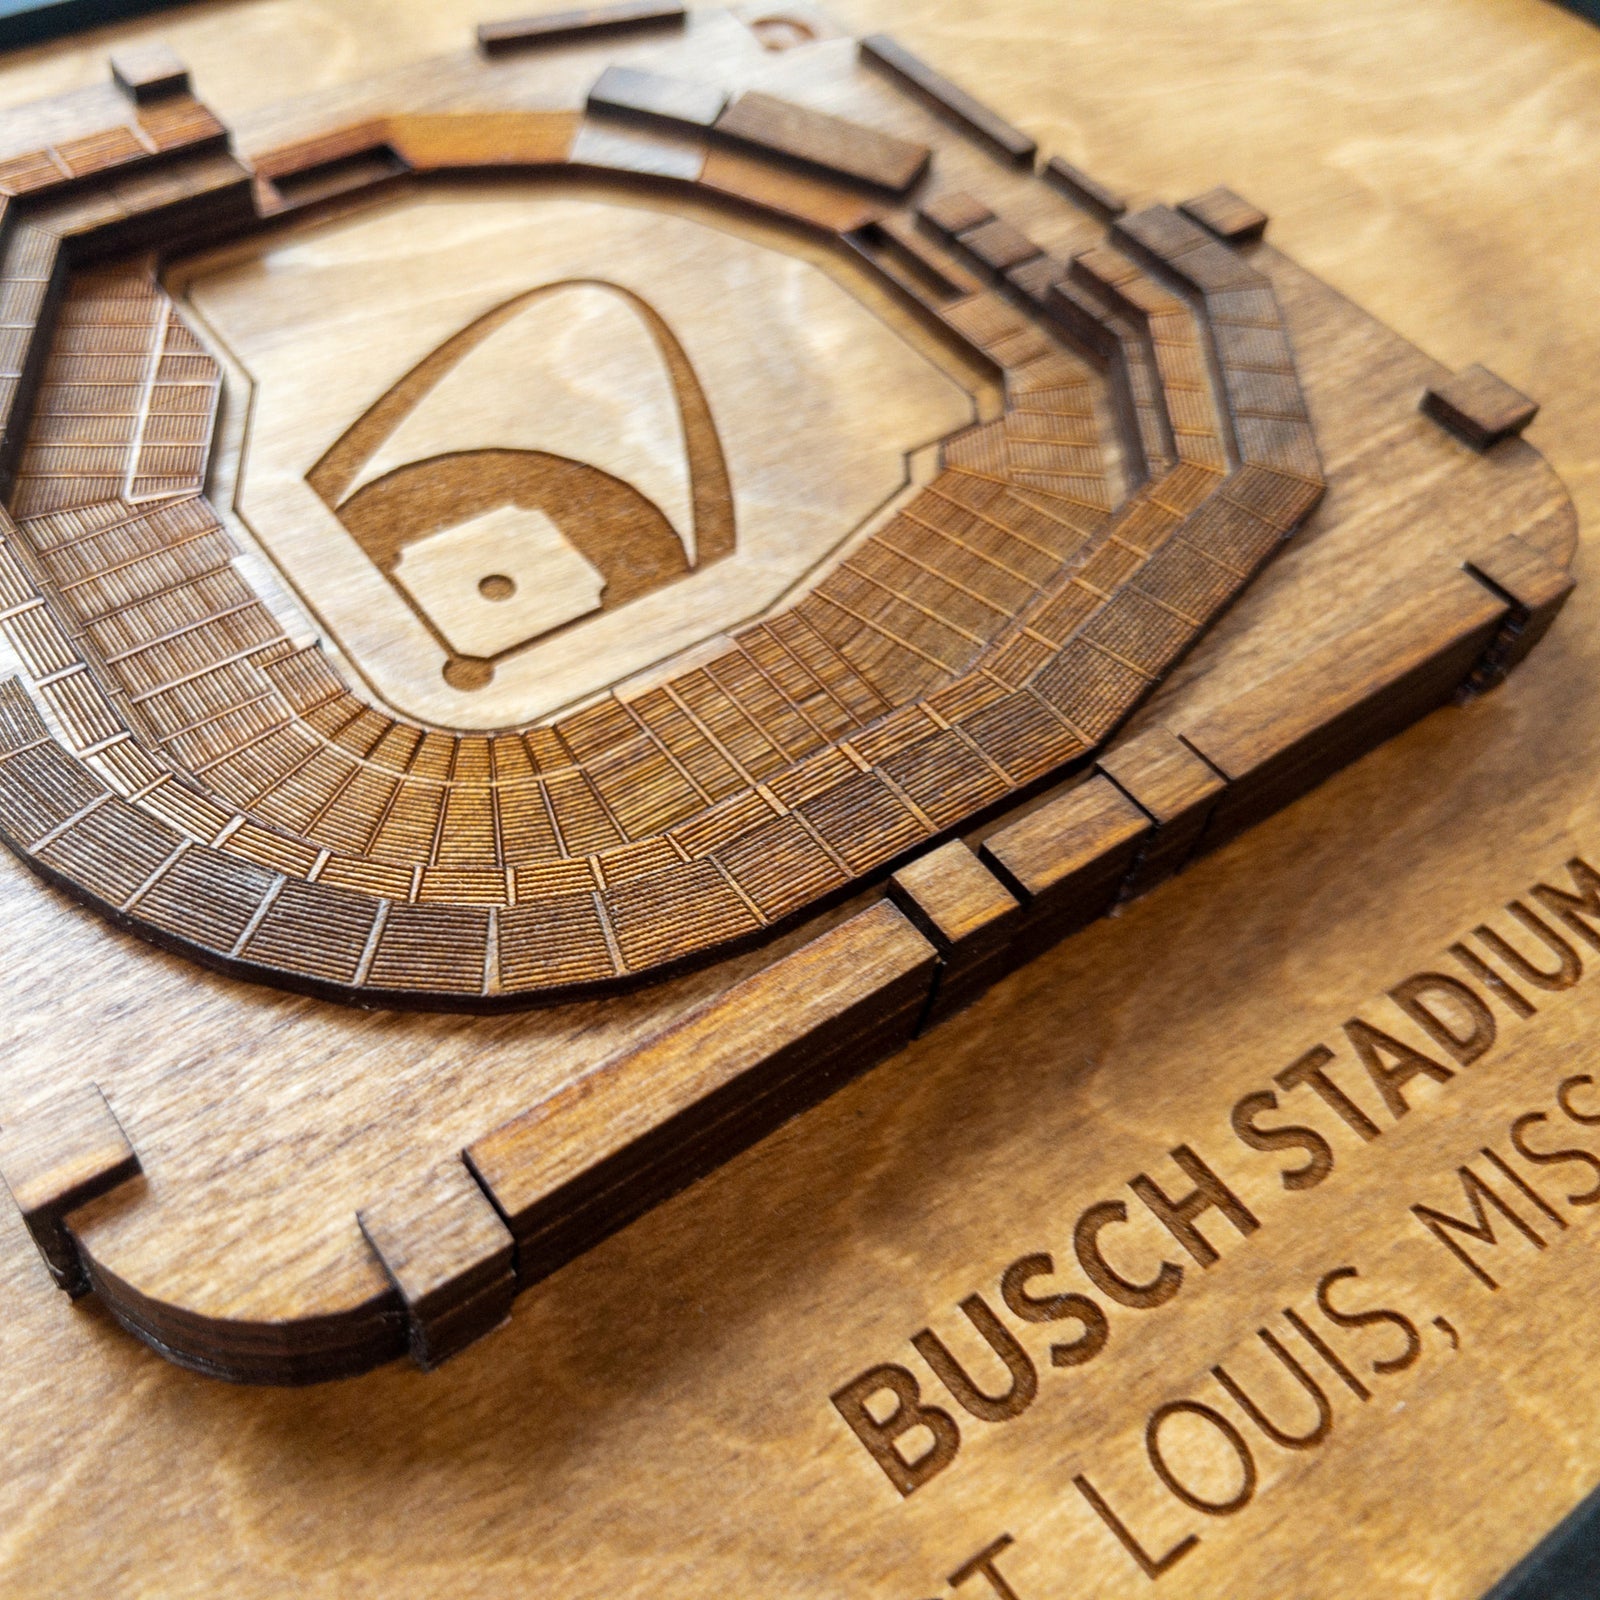 St. Louis Cardinals Busch Stadium (single light tower) — Steve Hartman Art